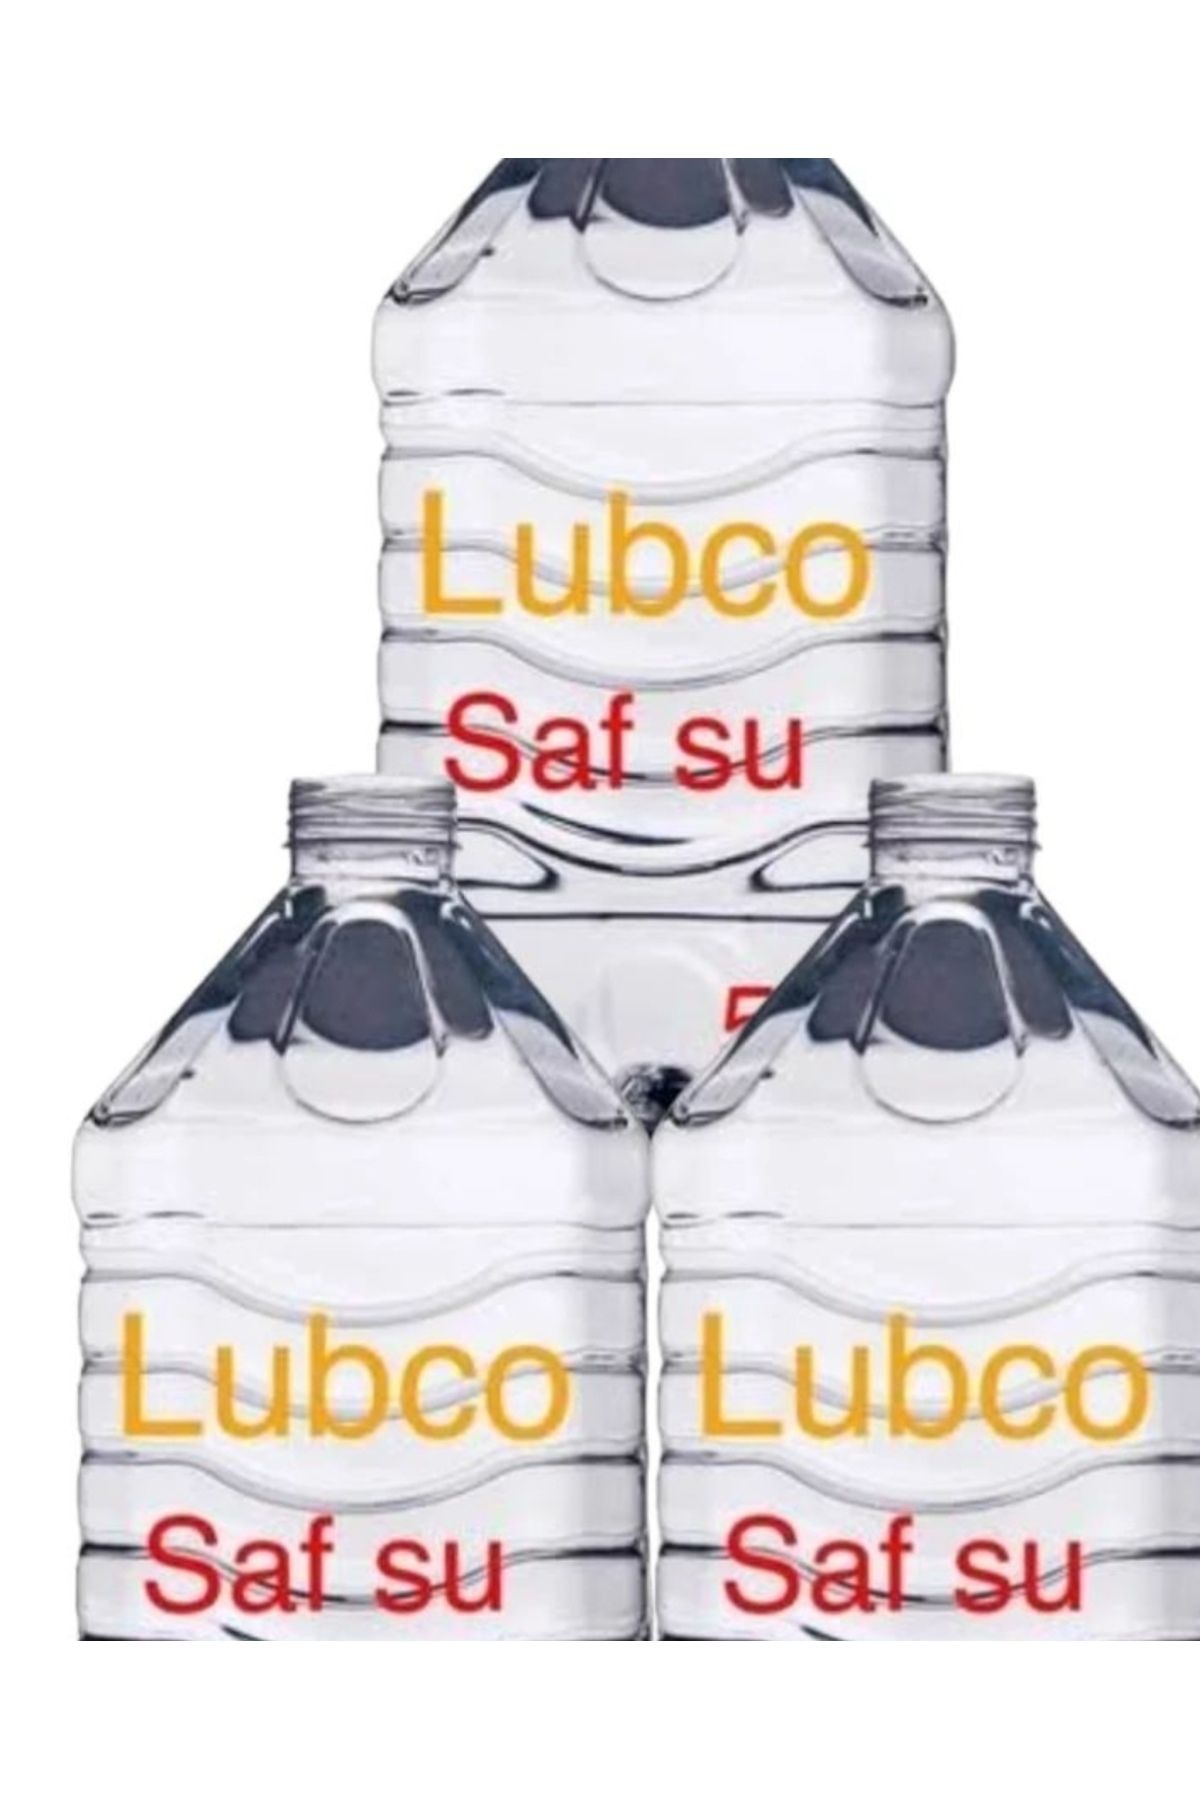 LUBCO Premium Saf Su Miss 0 Pm -ütü Akü- Radyatör -robot- Gümüşsuyuna Uygun 5 L X 3 = 15 Litre